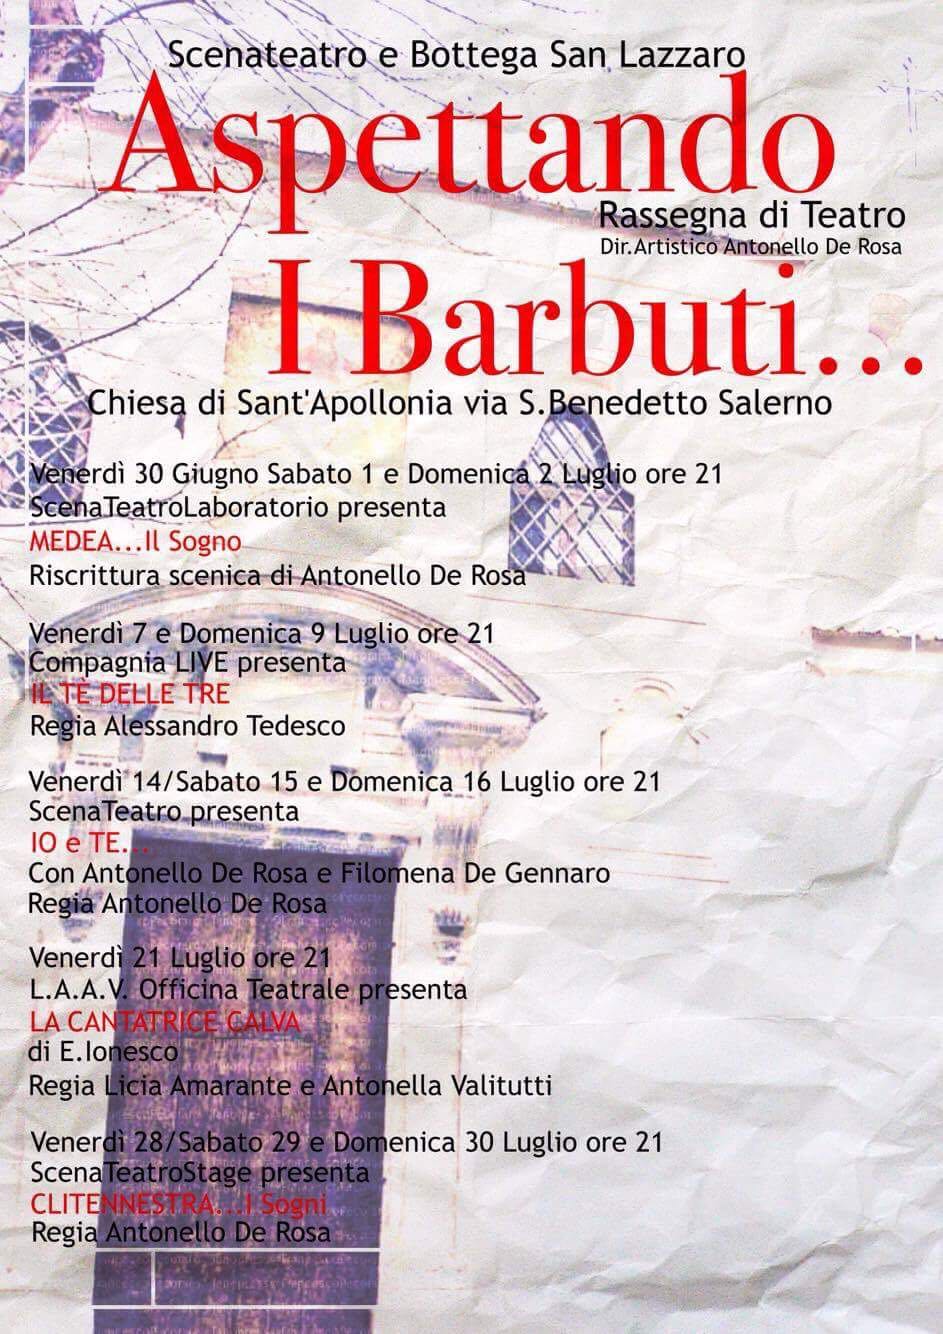 Aspettando i Barbuti: secondo appuntamento per la rassegna organizzata da Antonello De Rosa. Venerdì 12 e Sabato 13 a Salerno